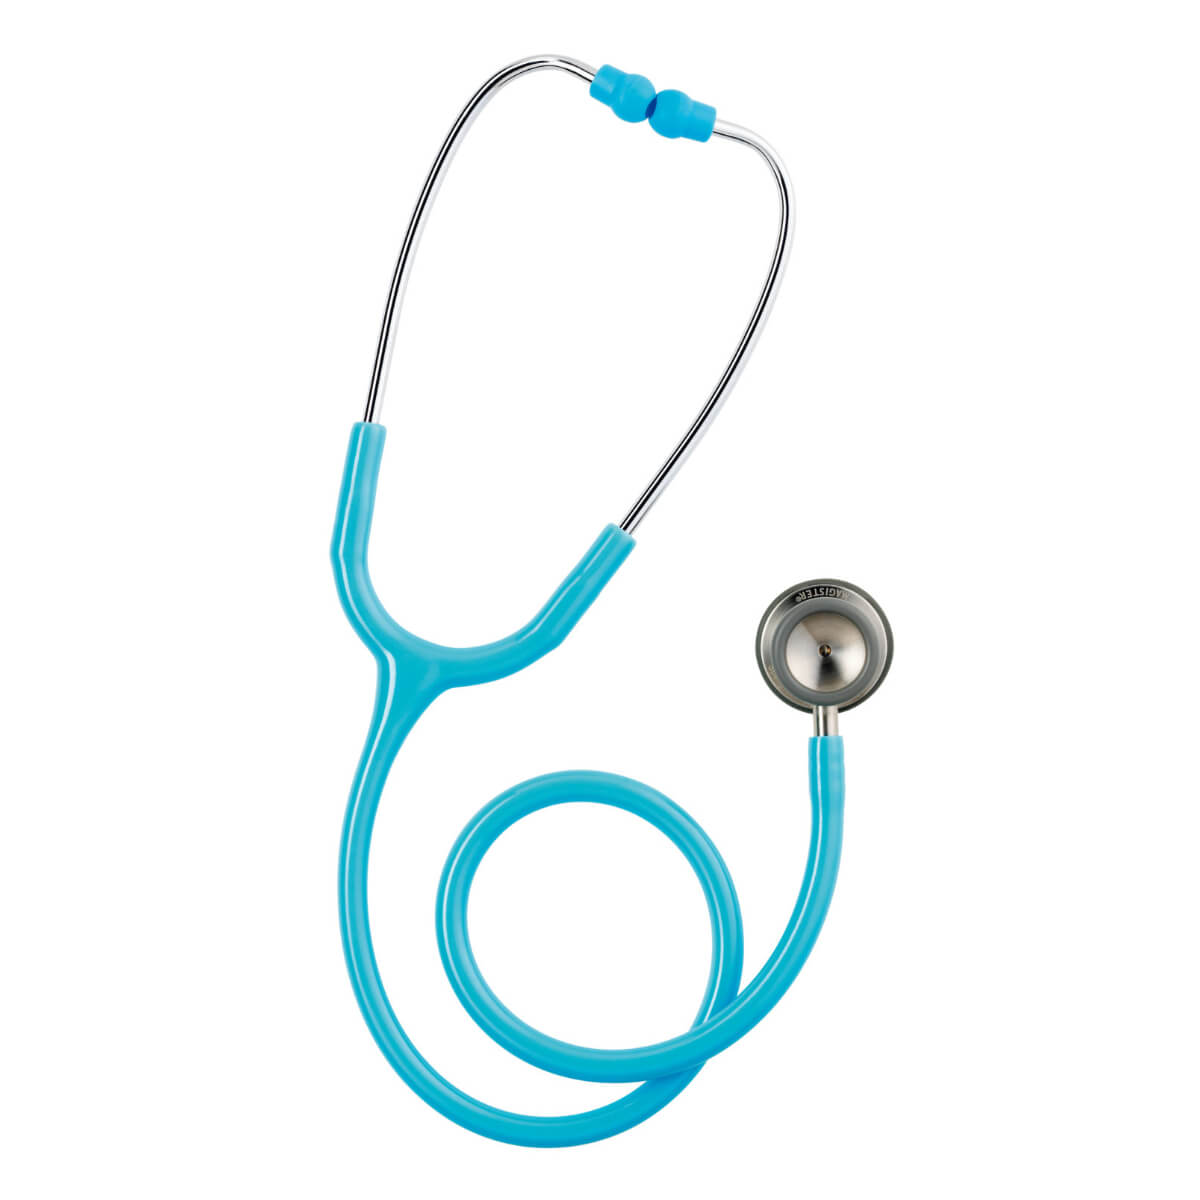 Spengler Magister pediatric stethoscope | DocCheck Shop